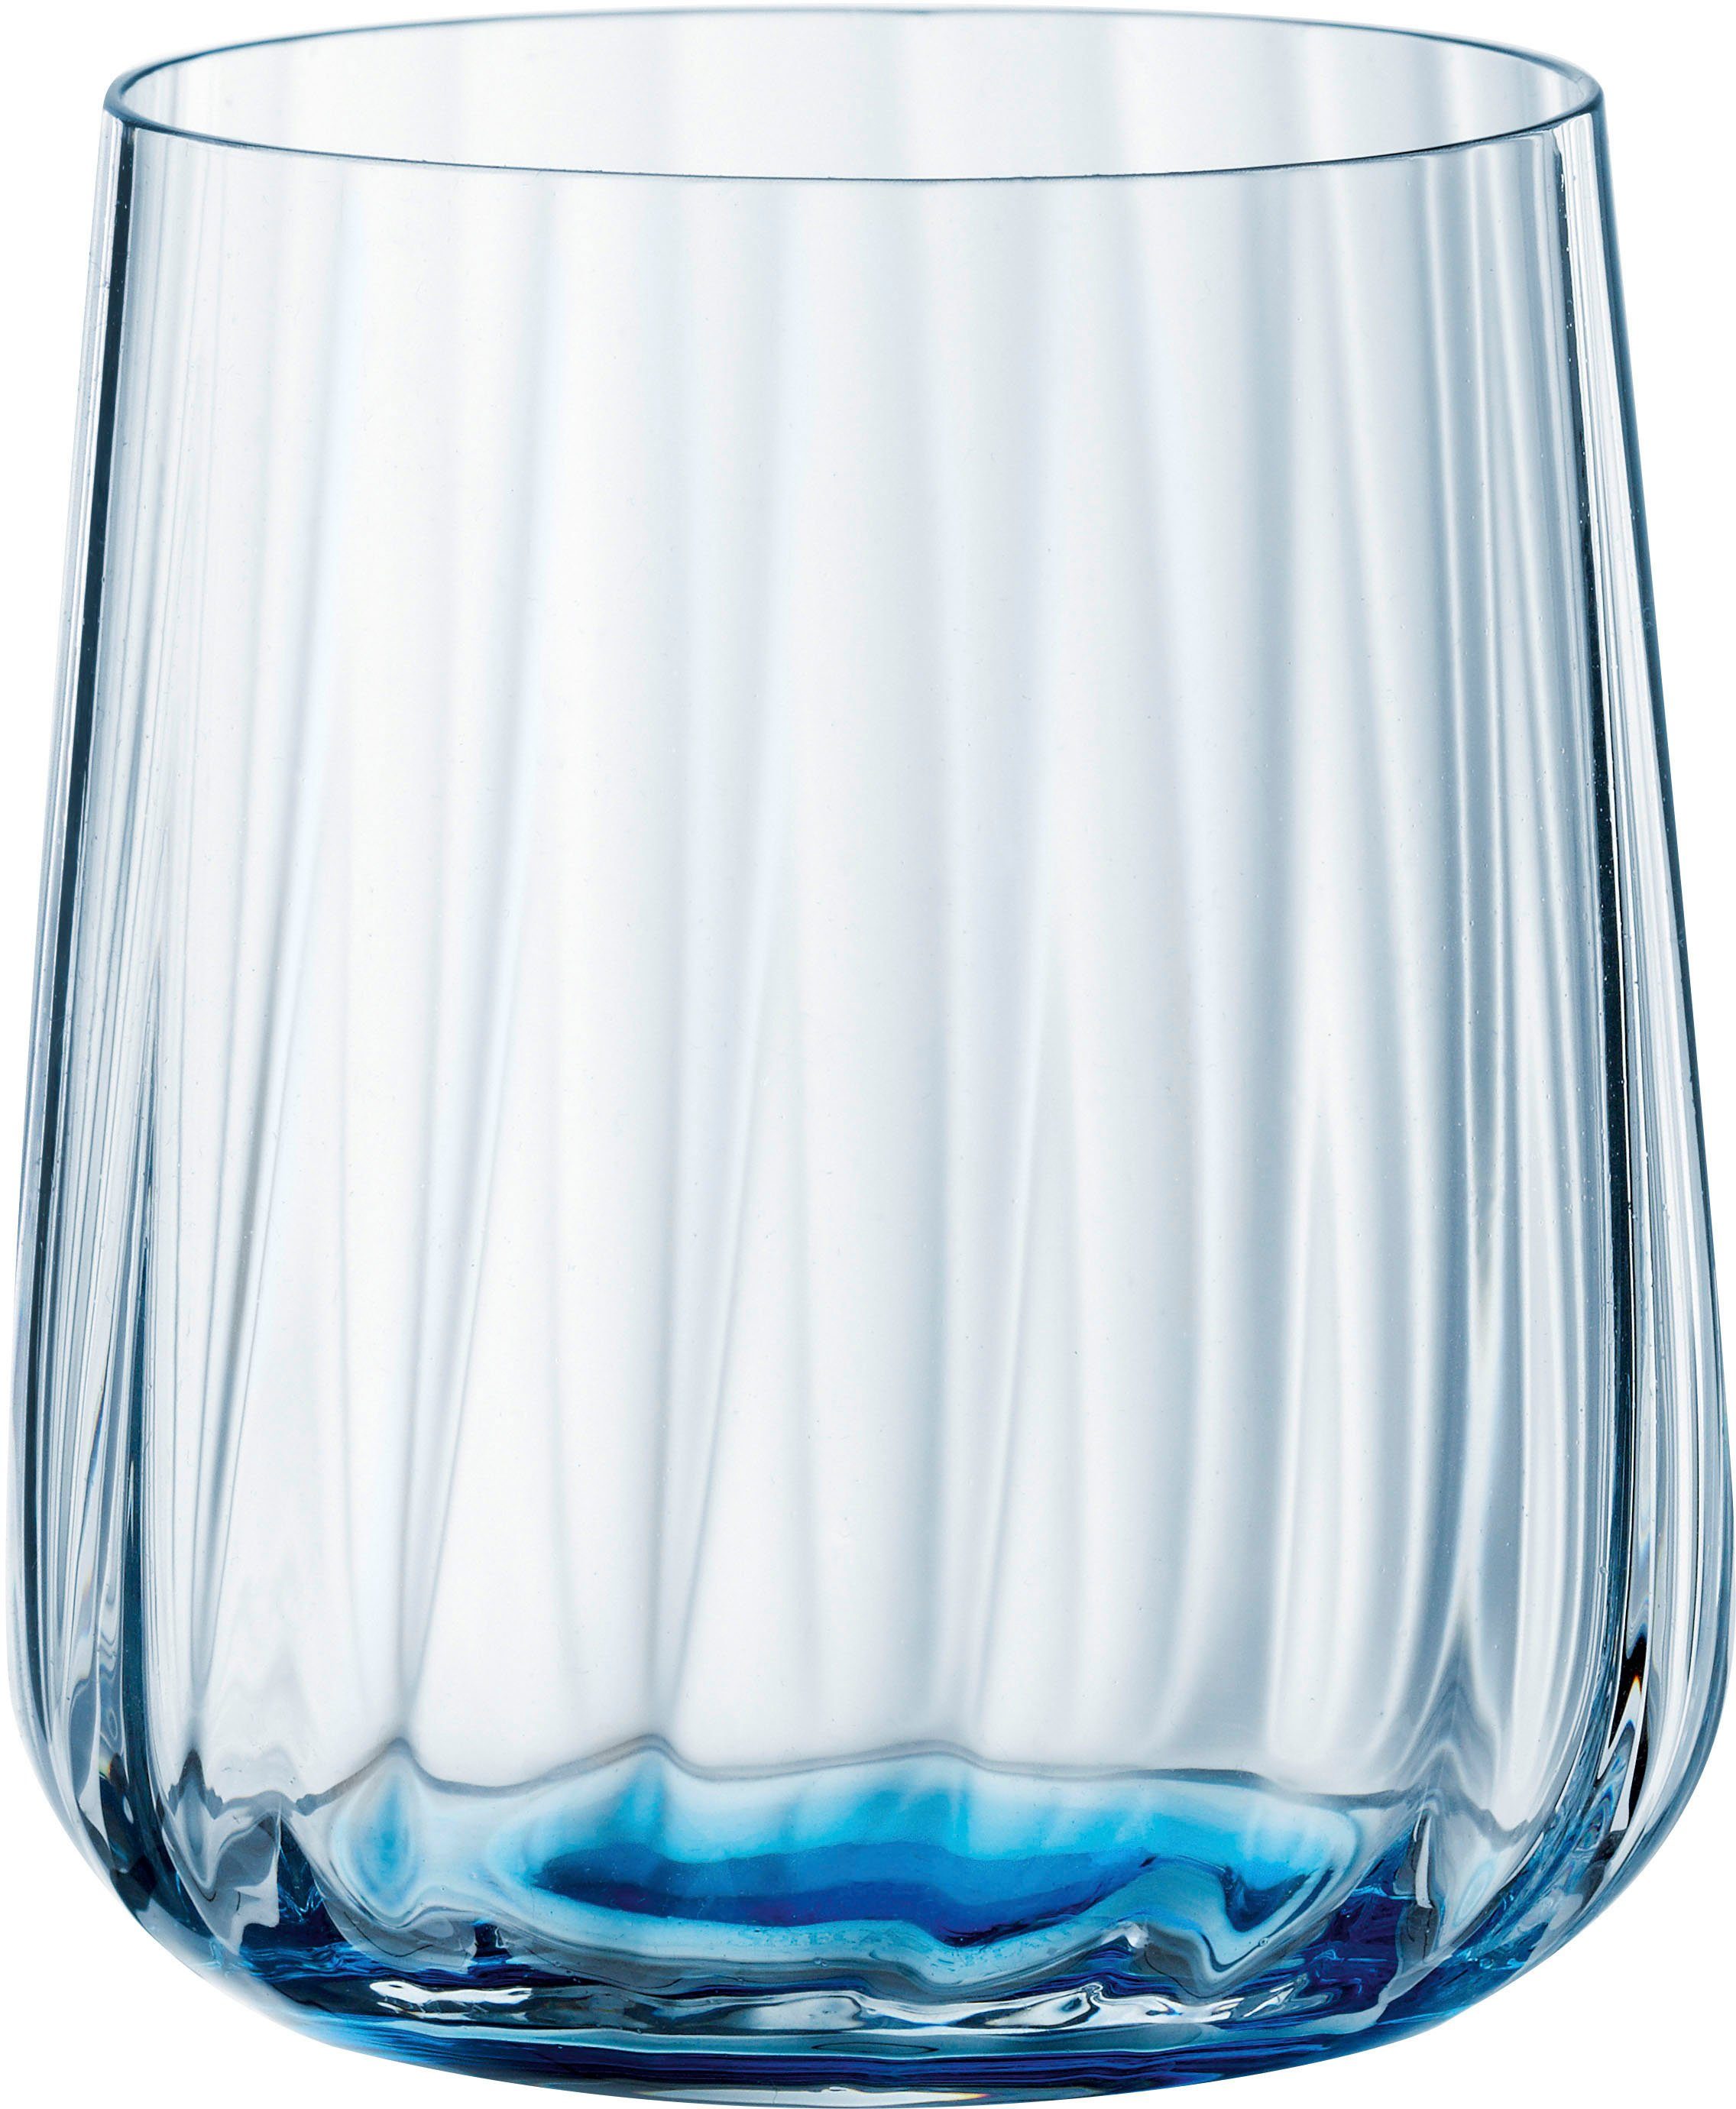 SPIEGELAU Becher LifeStyle, Kristallglas, 340 ml, 2-teilig ocean | Whiskygläser